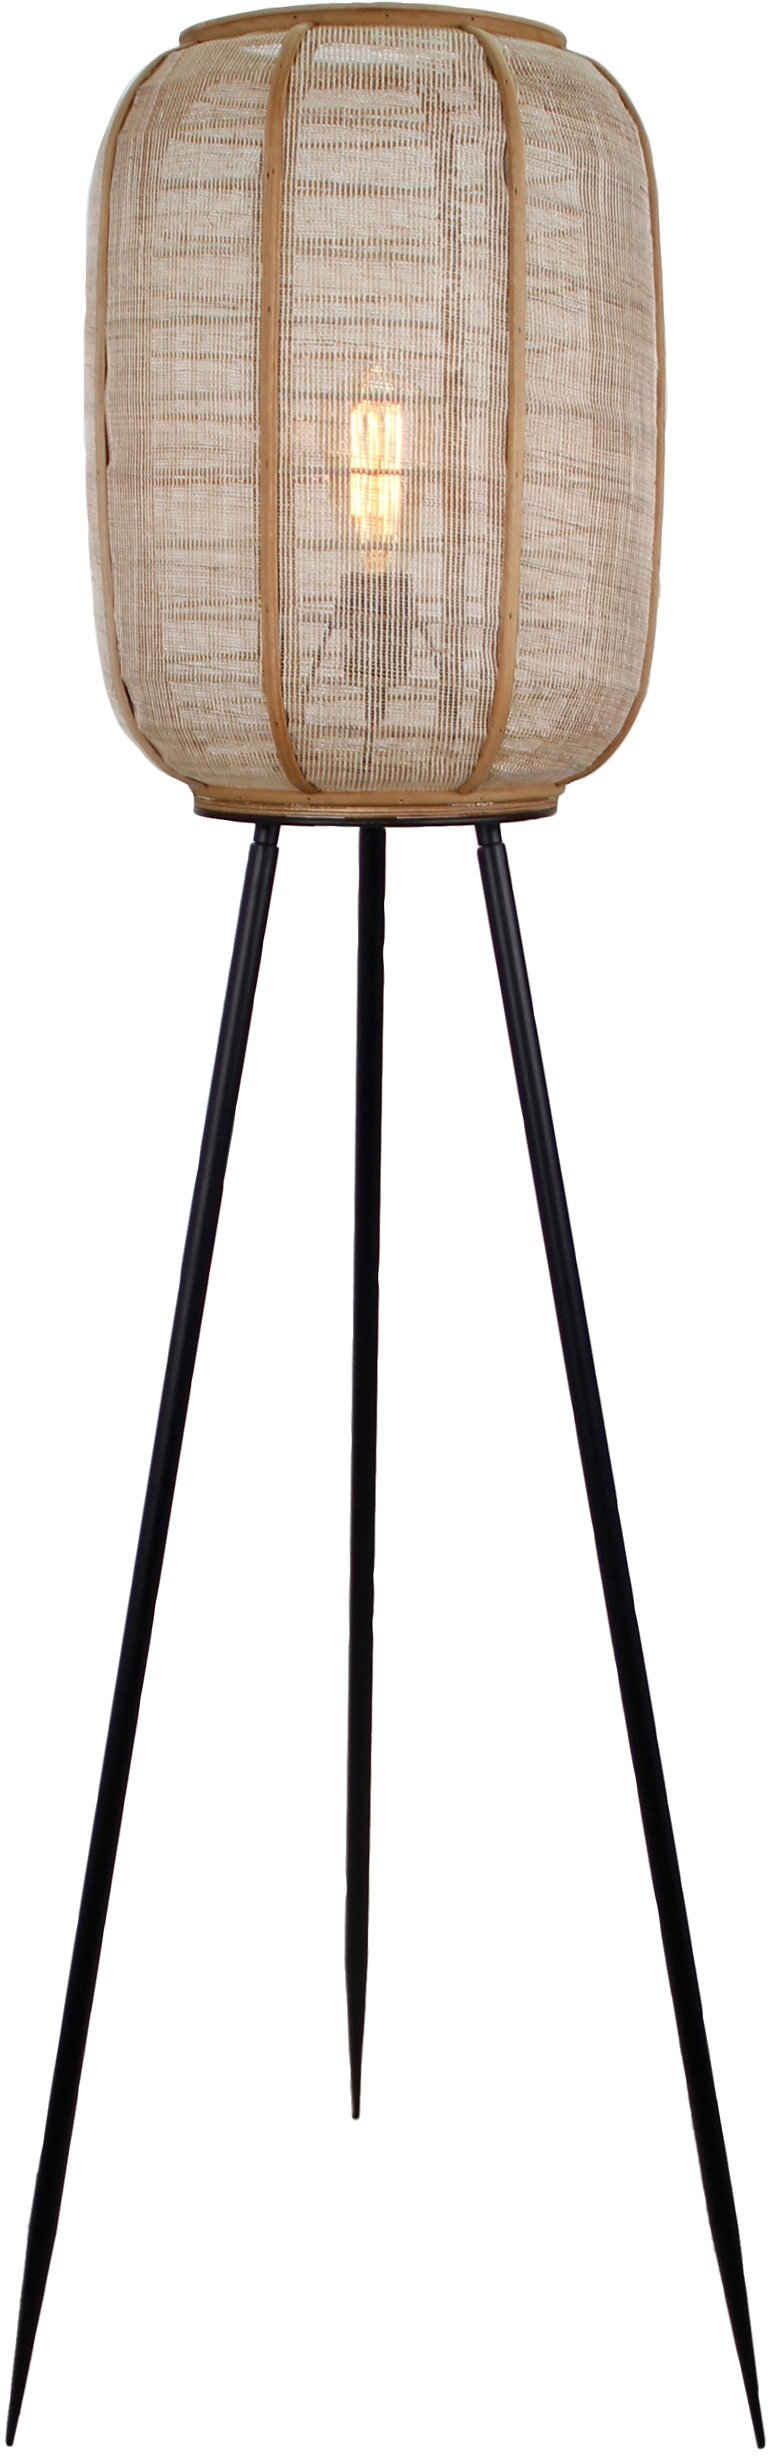 Home affaire Stehlampe Rouez, ohne Leuchtmittel, dreibeinige Standleuchte mit 1,34m Höhe, Schirm aus Textil und Holz